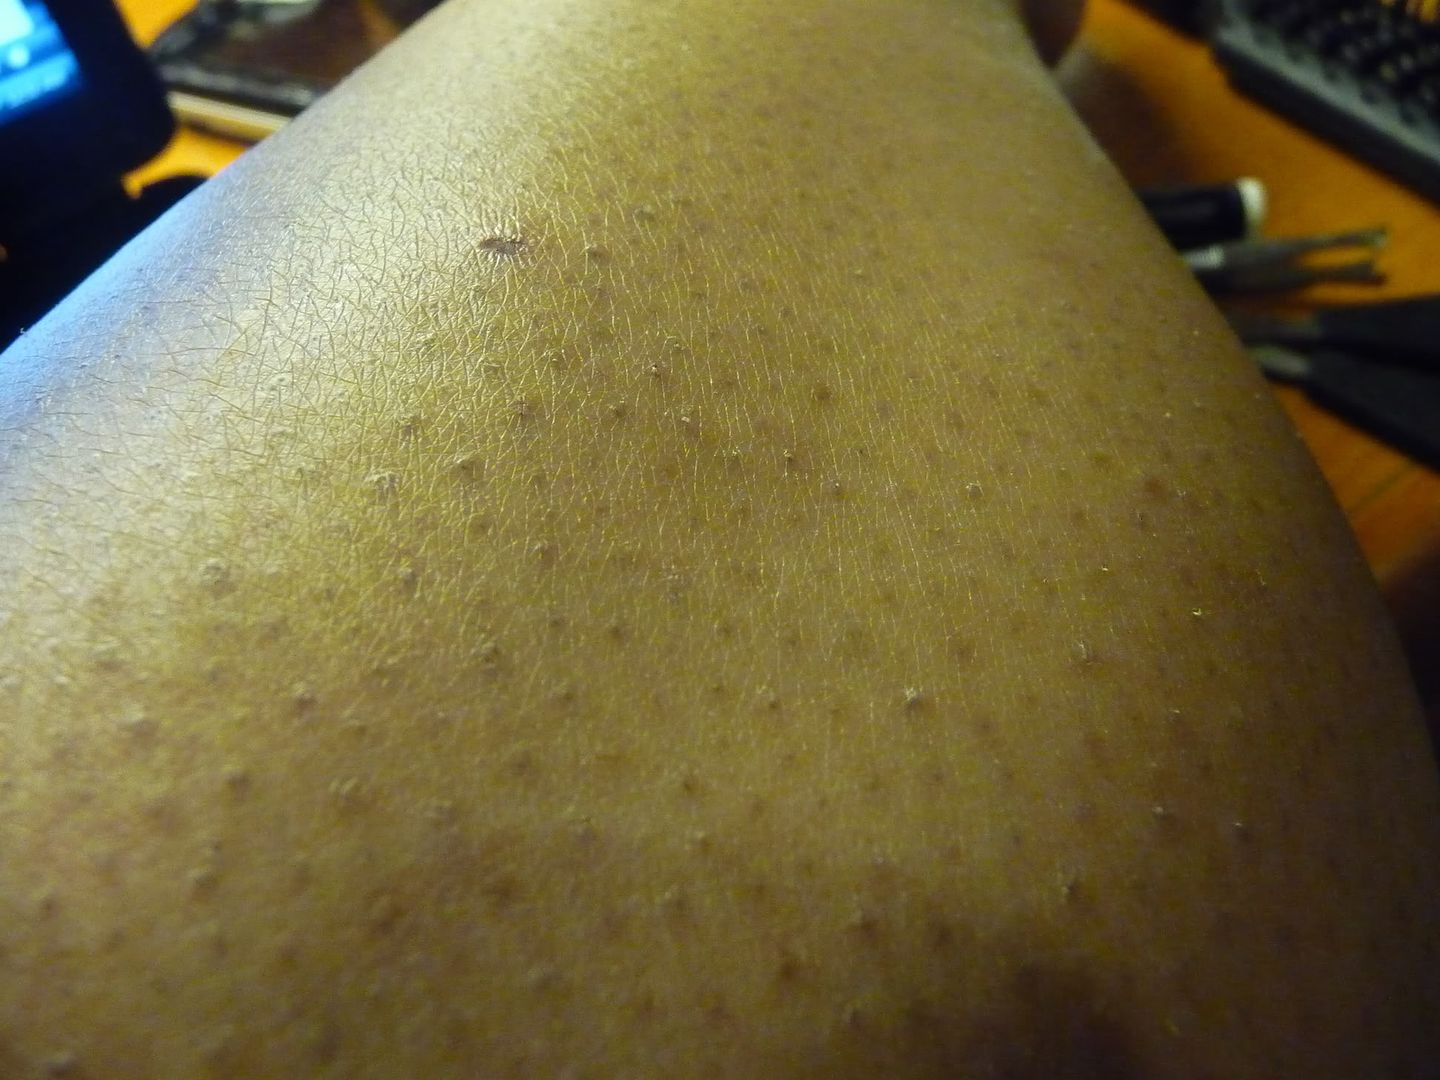 Dark Spots On Legs From Shaving legs look strange when shaving 